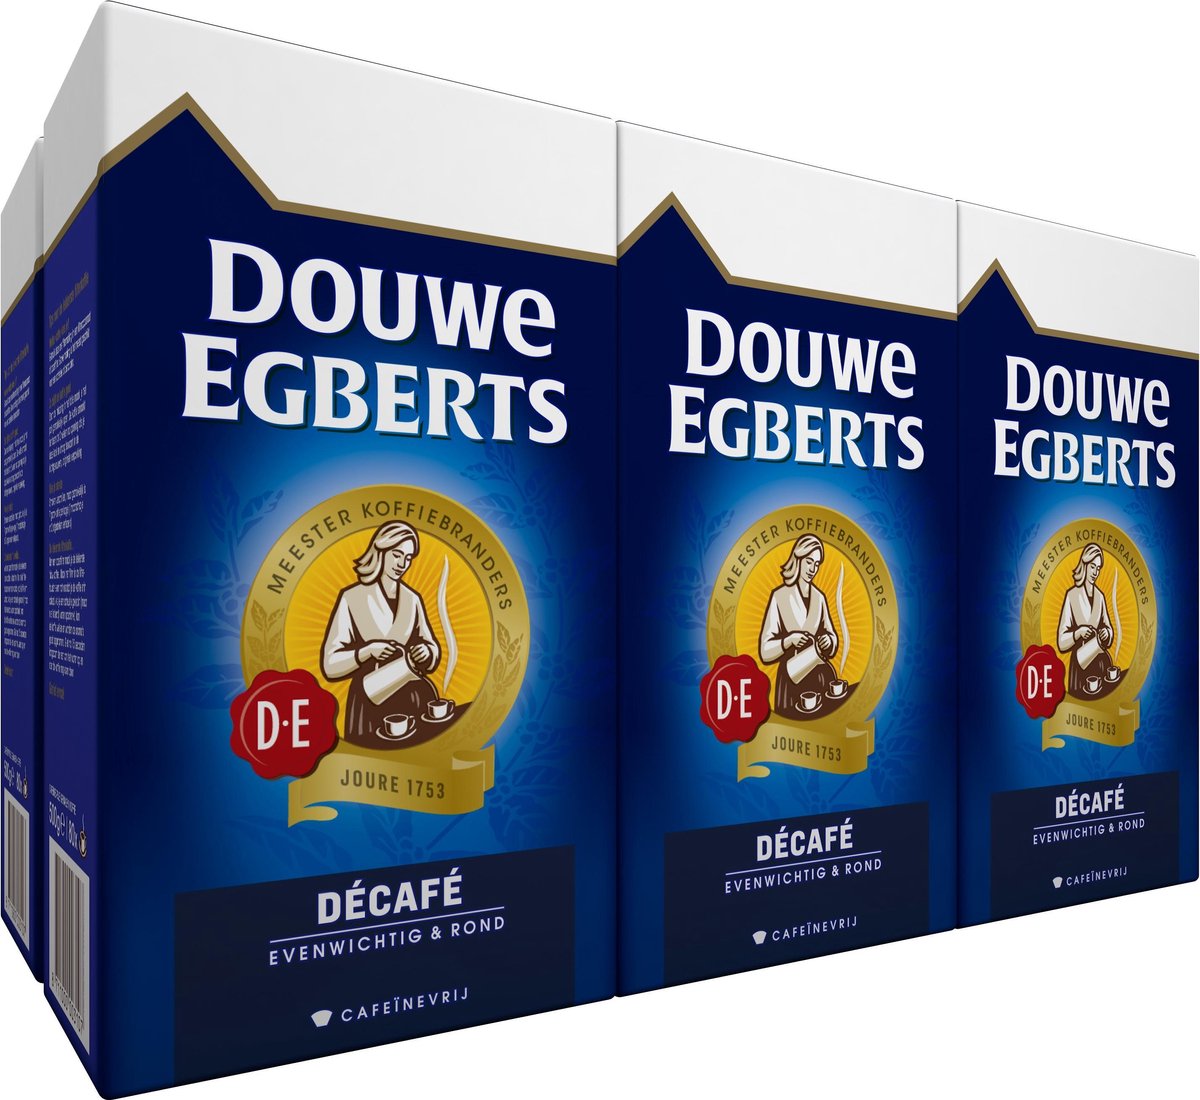 Douwe Egberts Decafé Filterkoffie - 6 500 gram bol.com